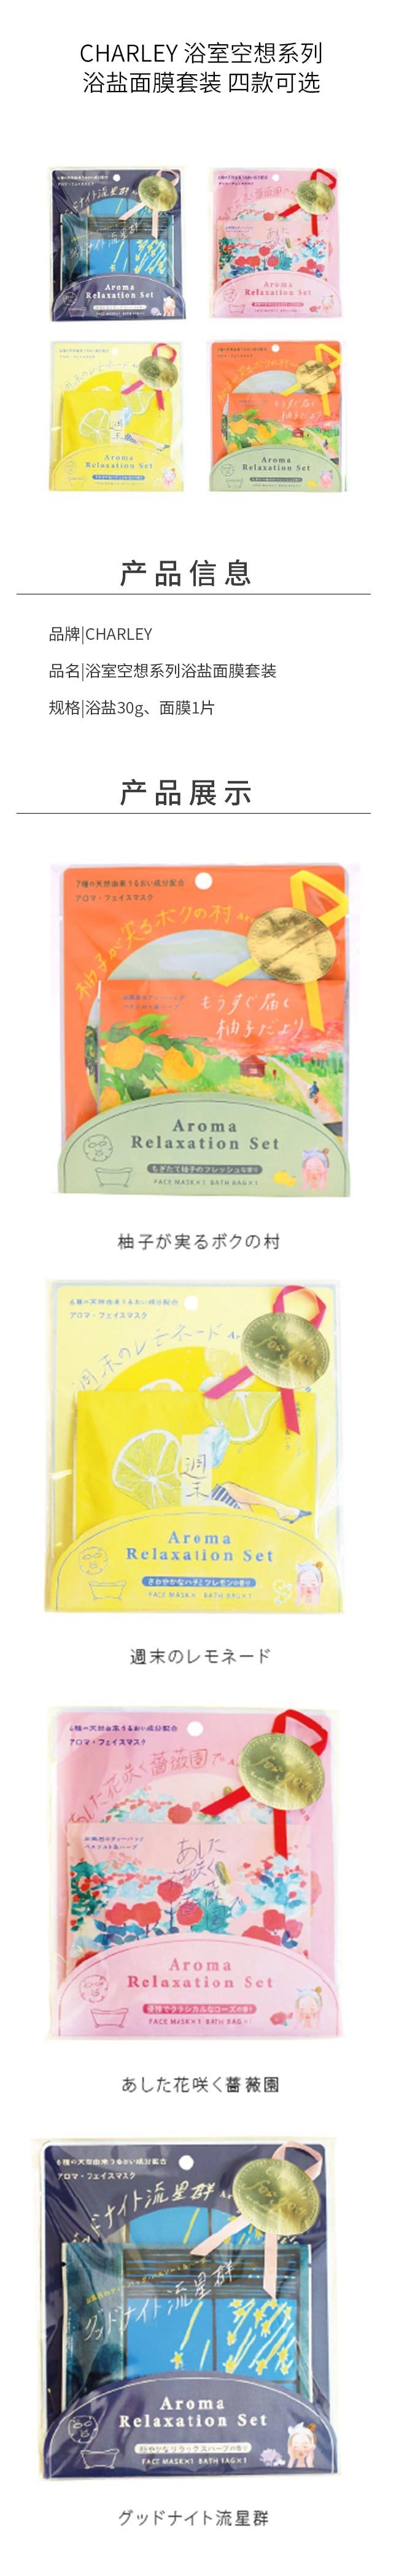 【日本直效郵件】CHARLEY 浴室空想系列面膜 1枚入 柚子豐收-柚子香